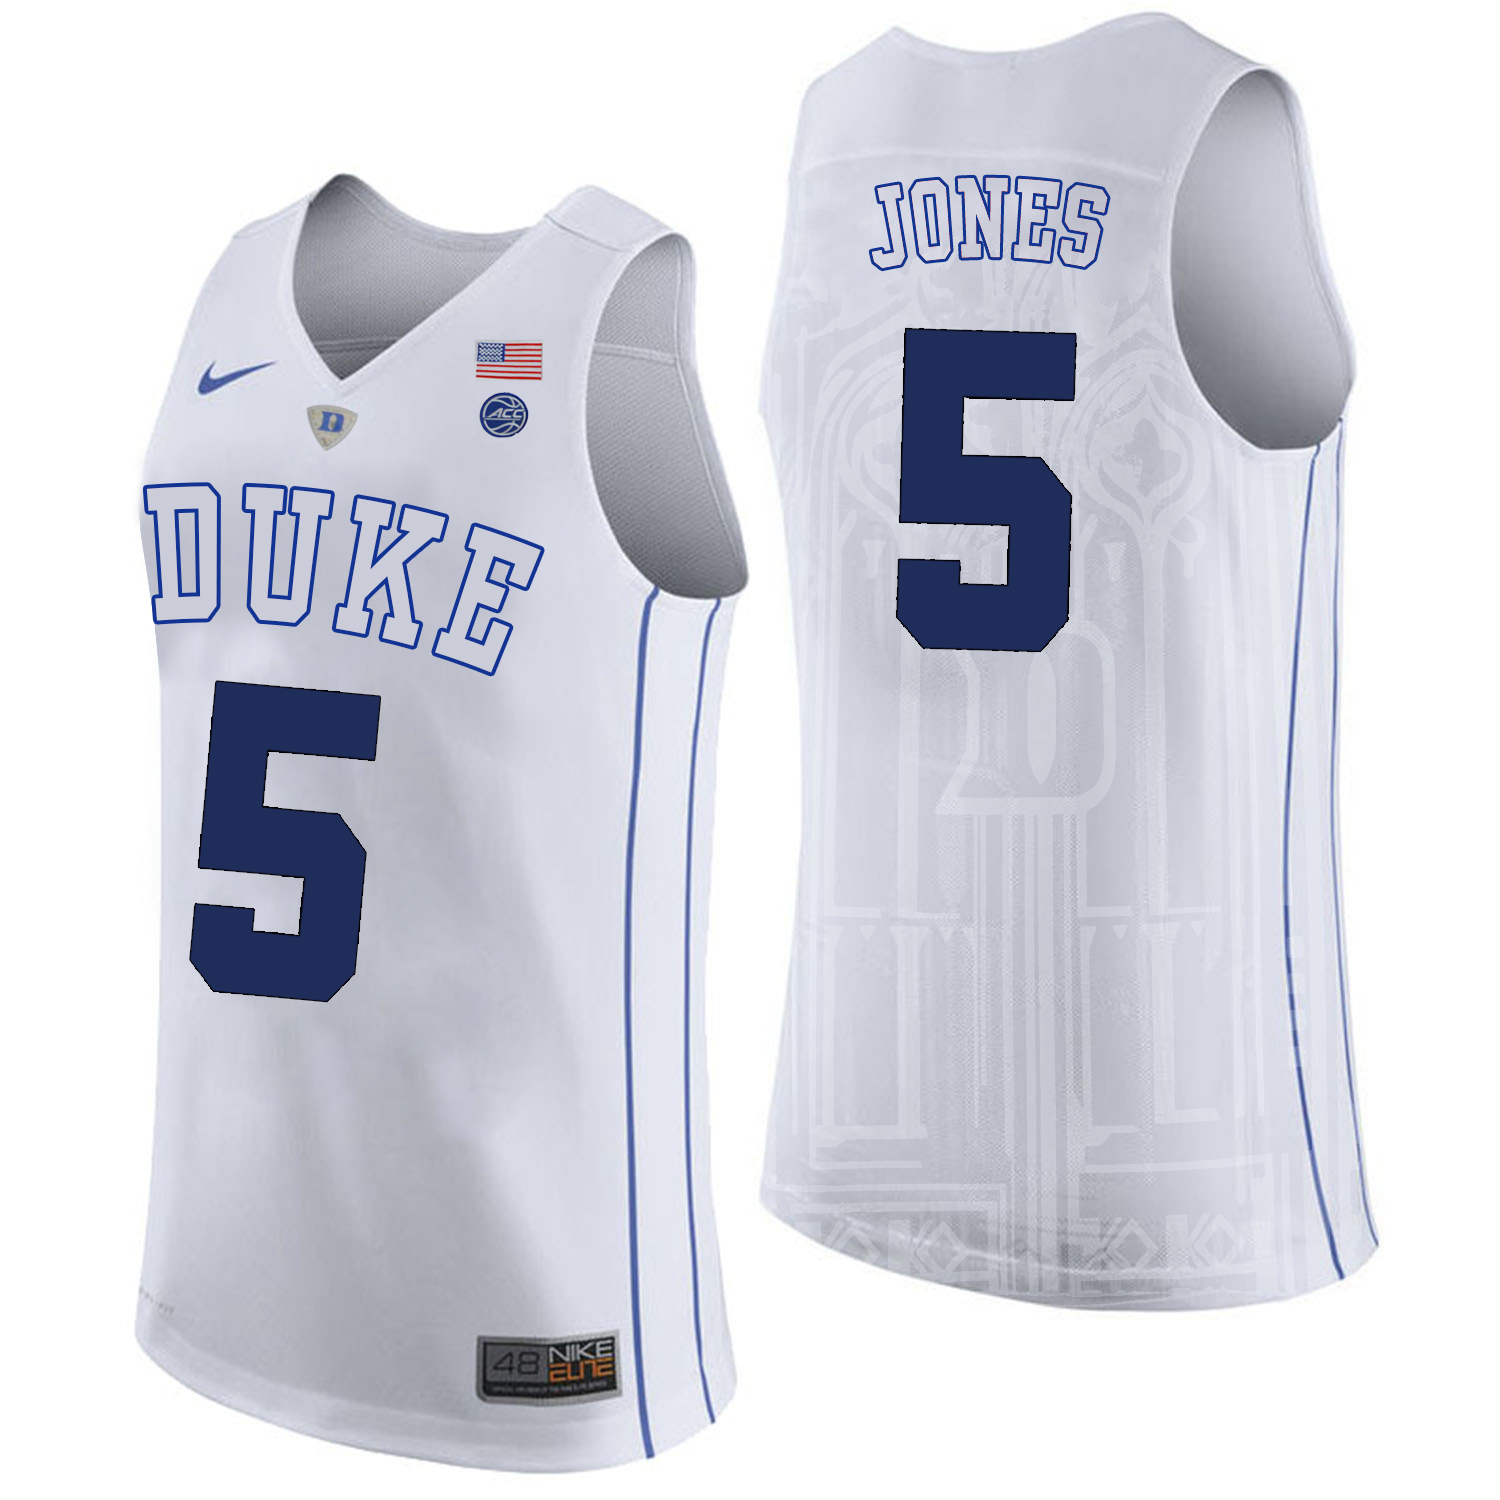 Duke Blue Devils 5 Tyus Jones White College Basketball Jersey